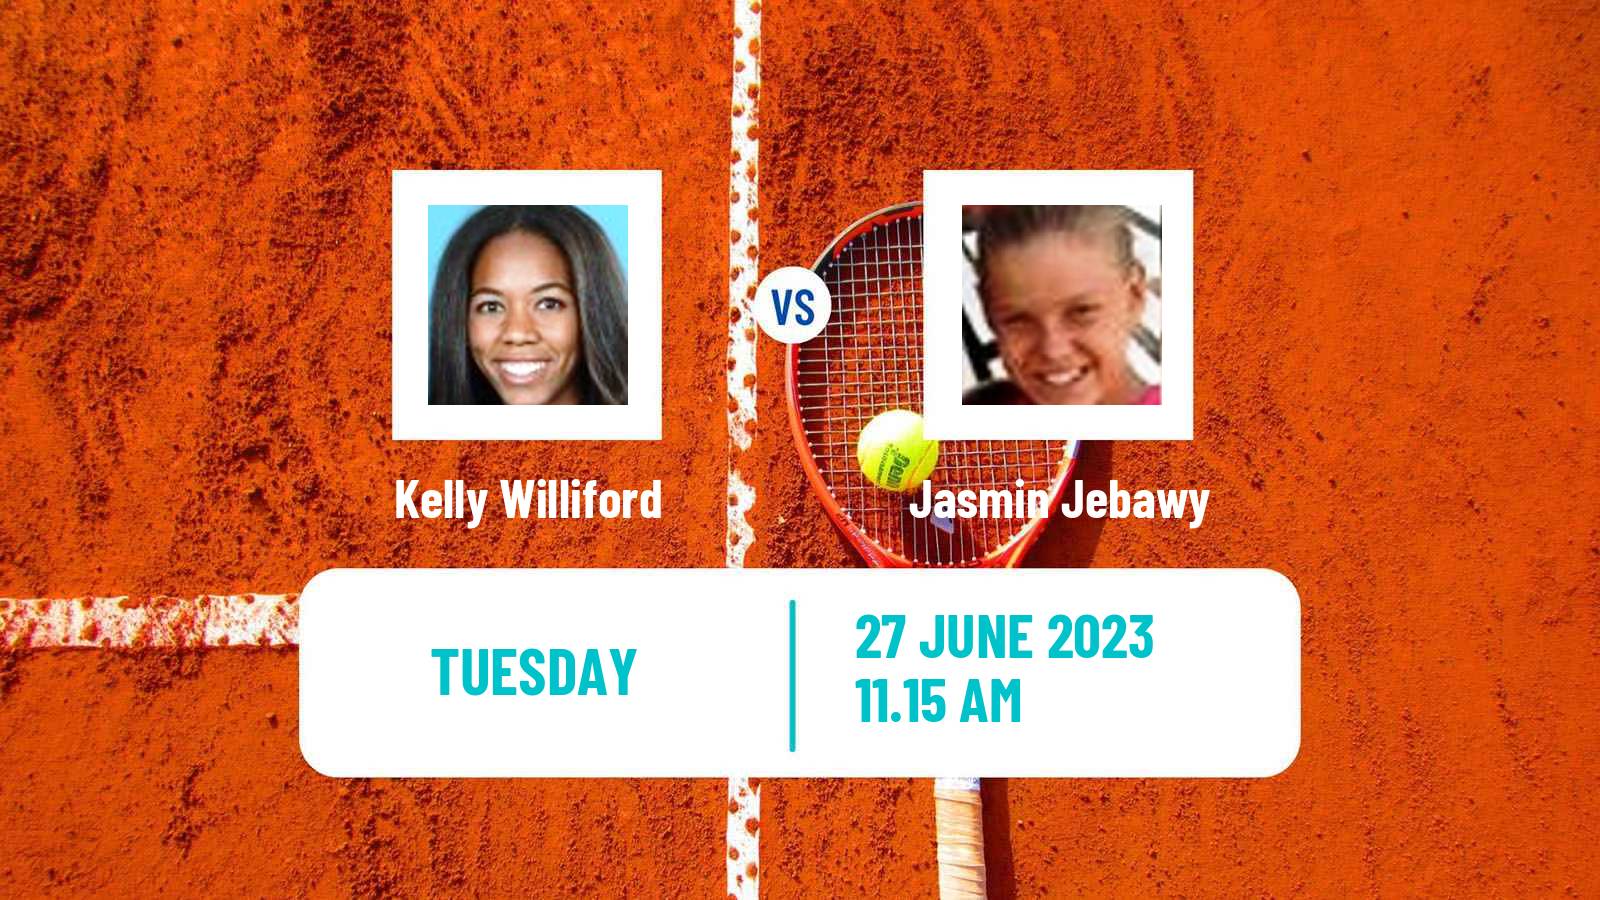 Tennis ITF W25 Santo Domingo 4 Women Kelly Williford - Jasmin Jebawy